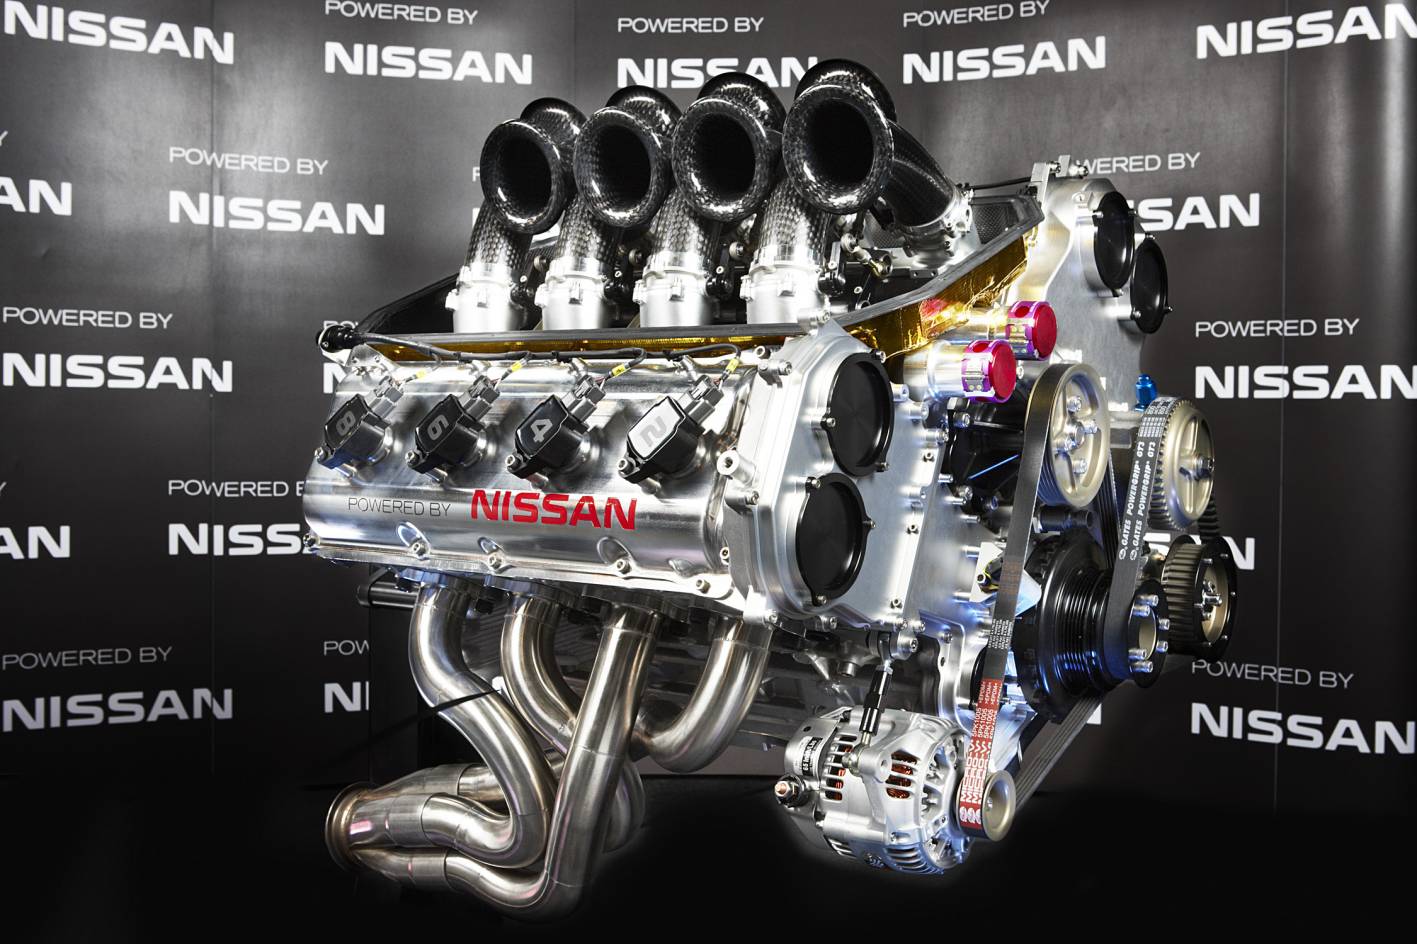 V8 supercars 2013 ford engine #4